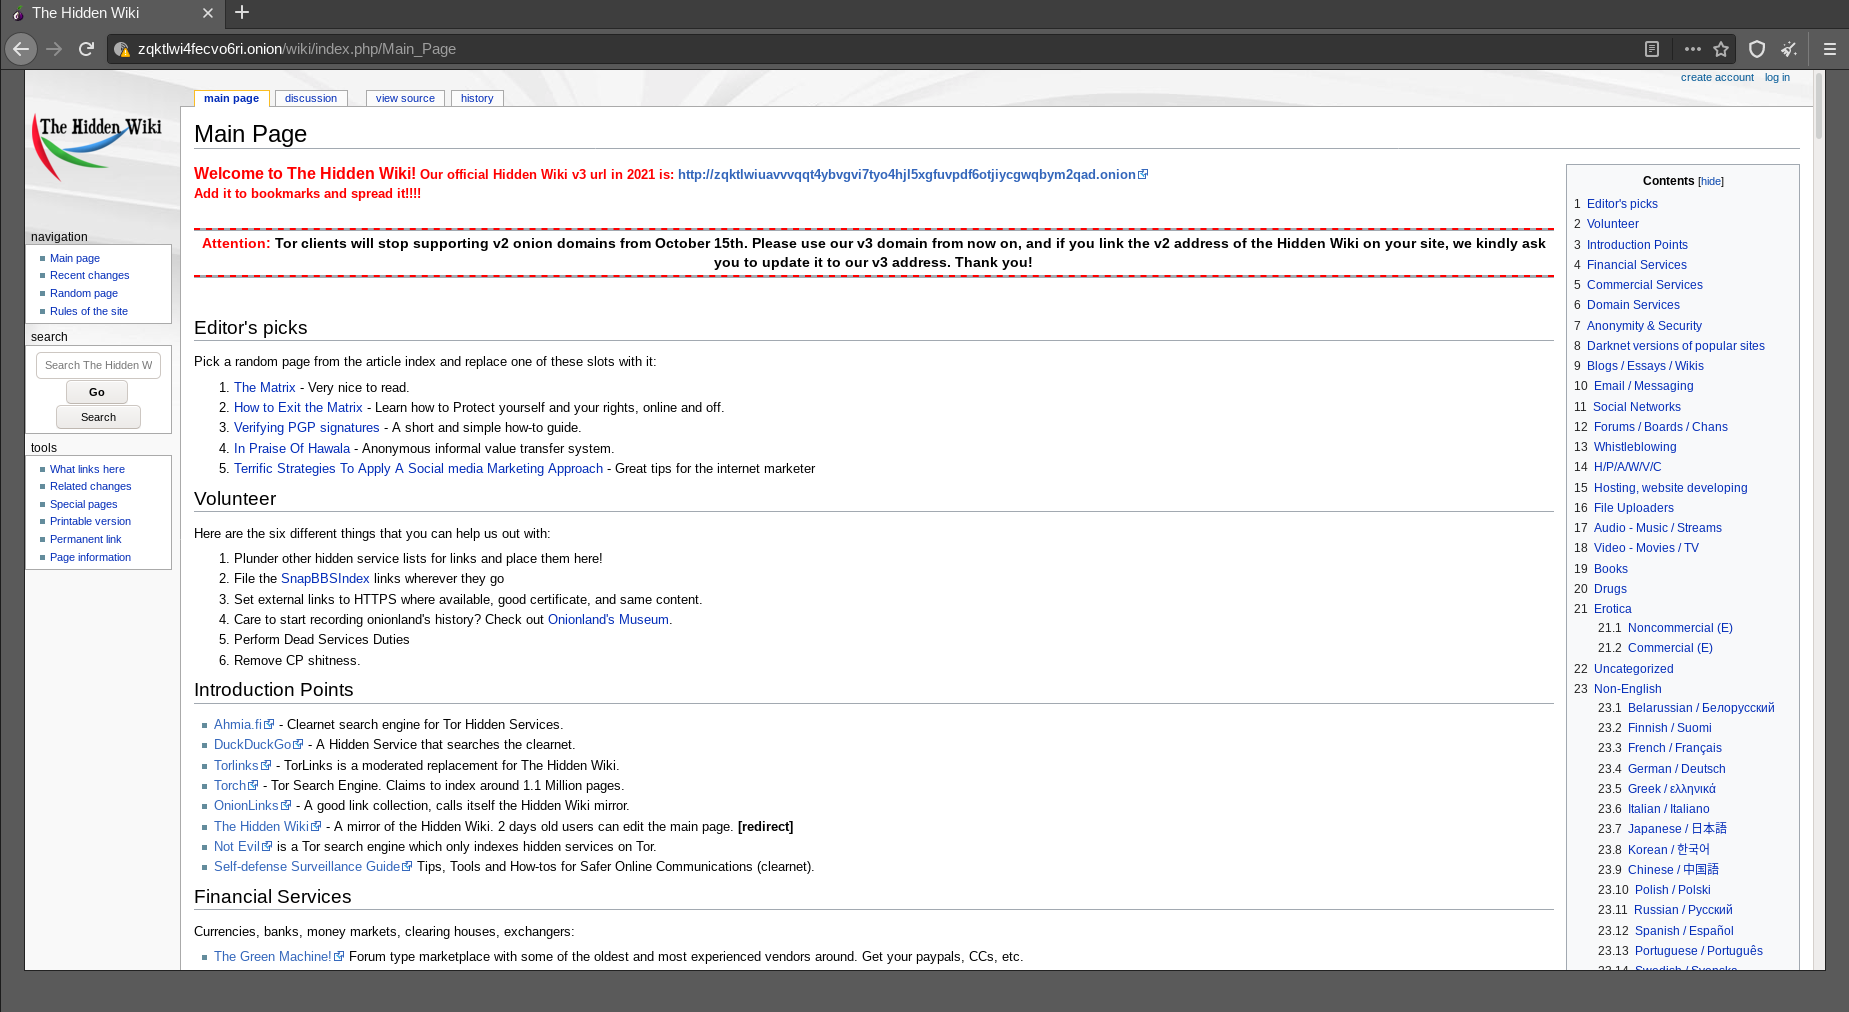 La page principale de la version dark web de Wikipedia connue sous le nom de The Hidden Wiki.